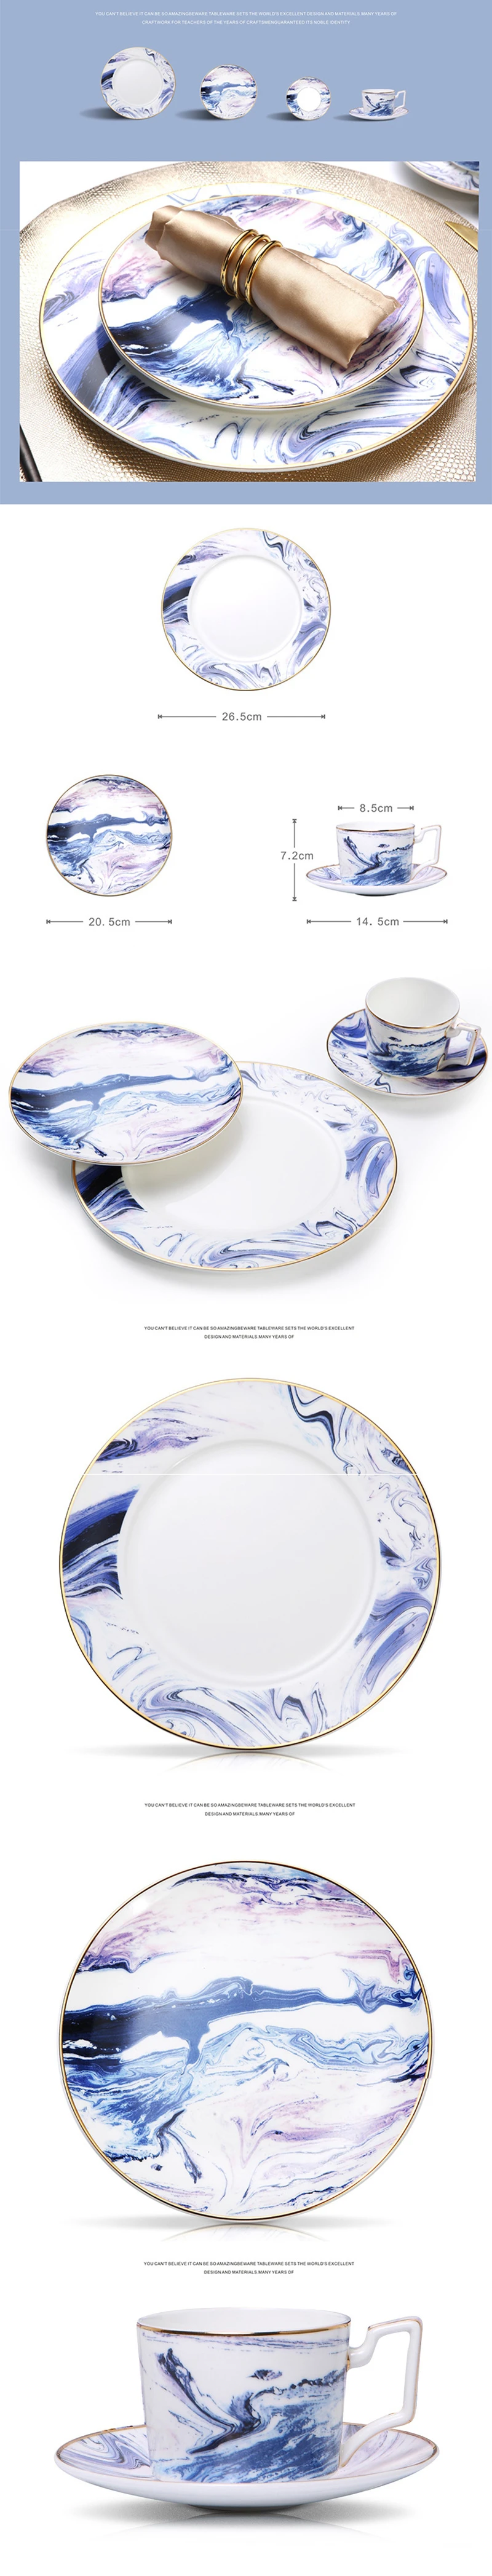 Керамика посуда полный набор дизайн «масляная живопись» 10 дюймов стейк плиты разнос для салатов Набор кружек для кофе ужин плоской посуды с каймой золотистого цвета 1 шт